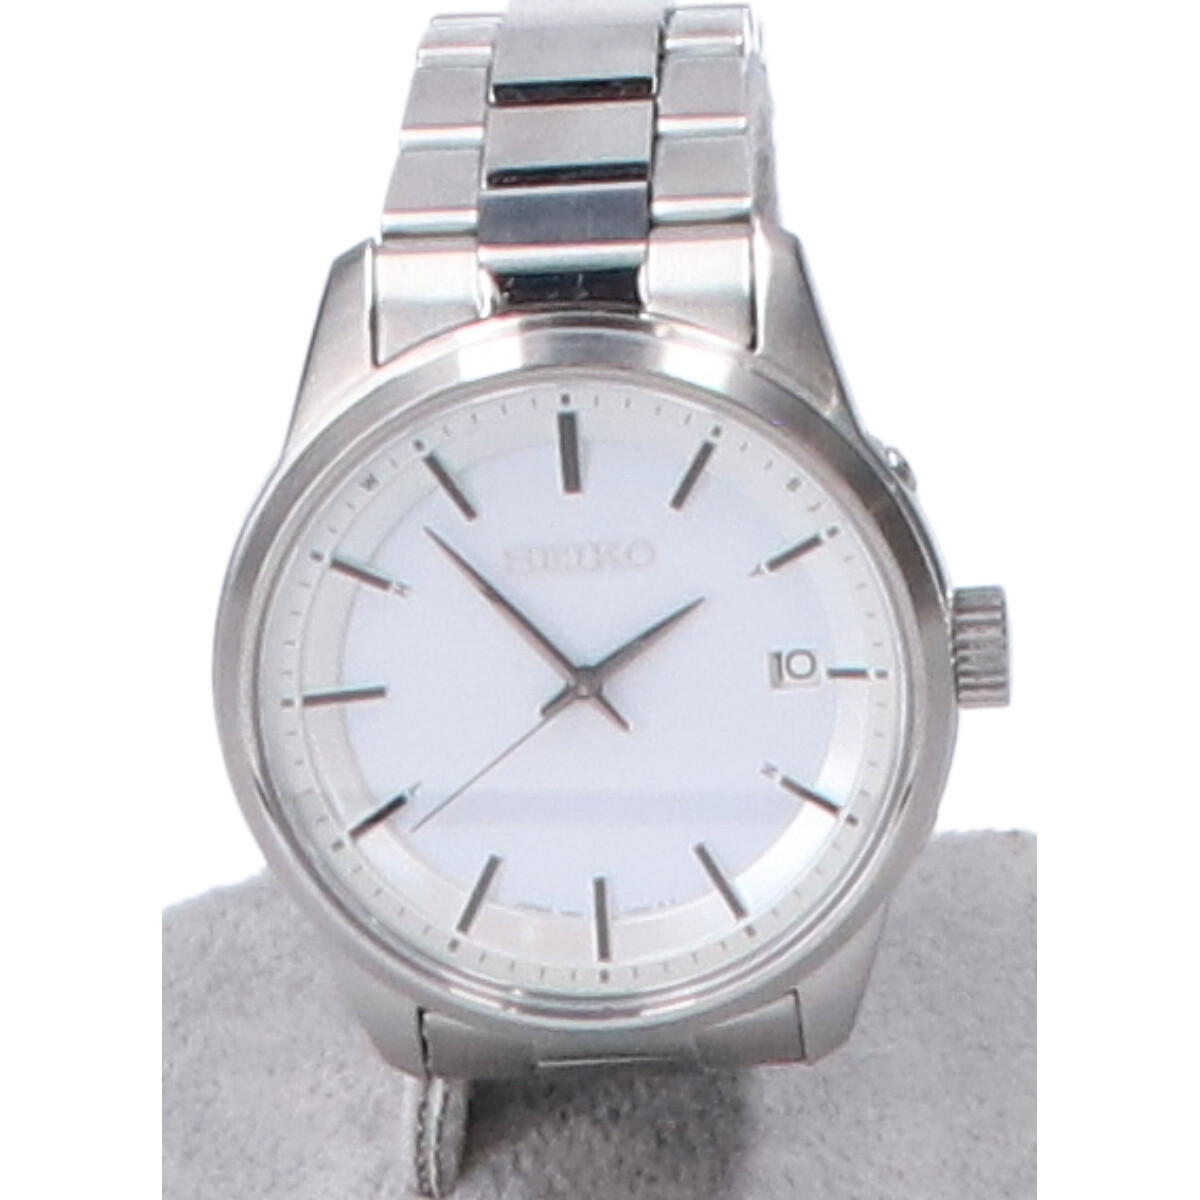 セイコーのSBTM251 セイコー セレクション ベーシックソーラー電波腕時計の買取実績です。